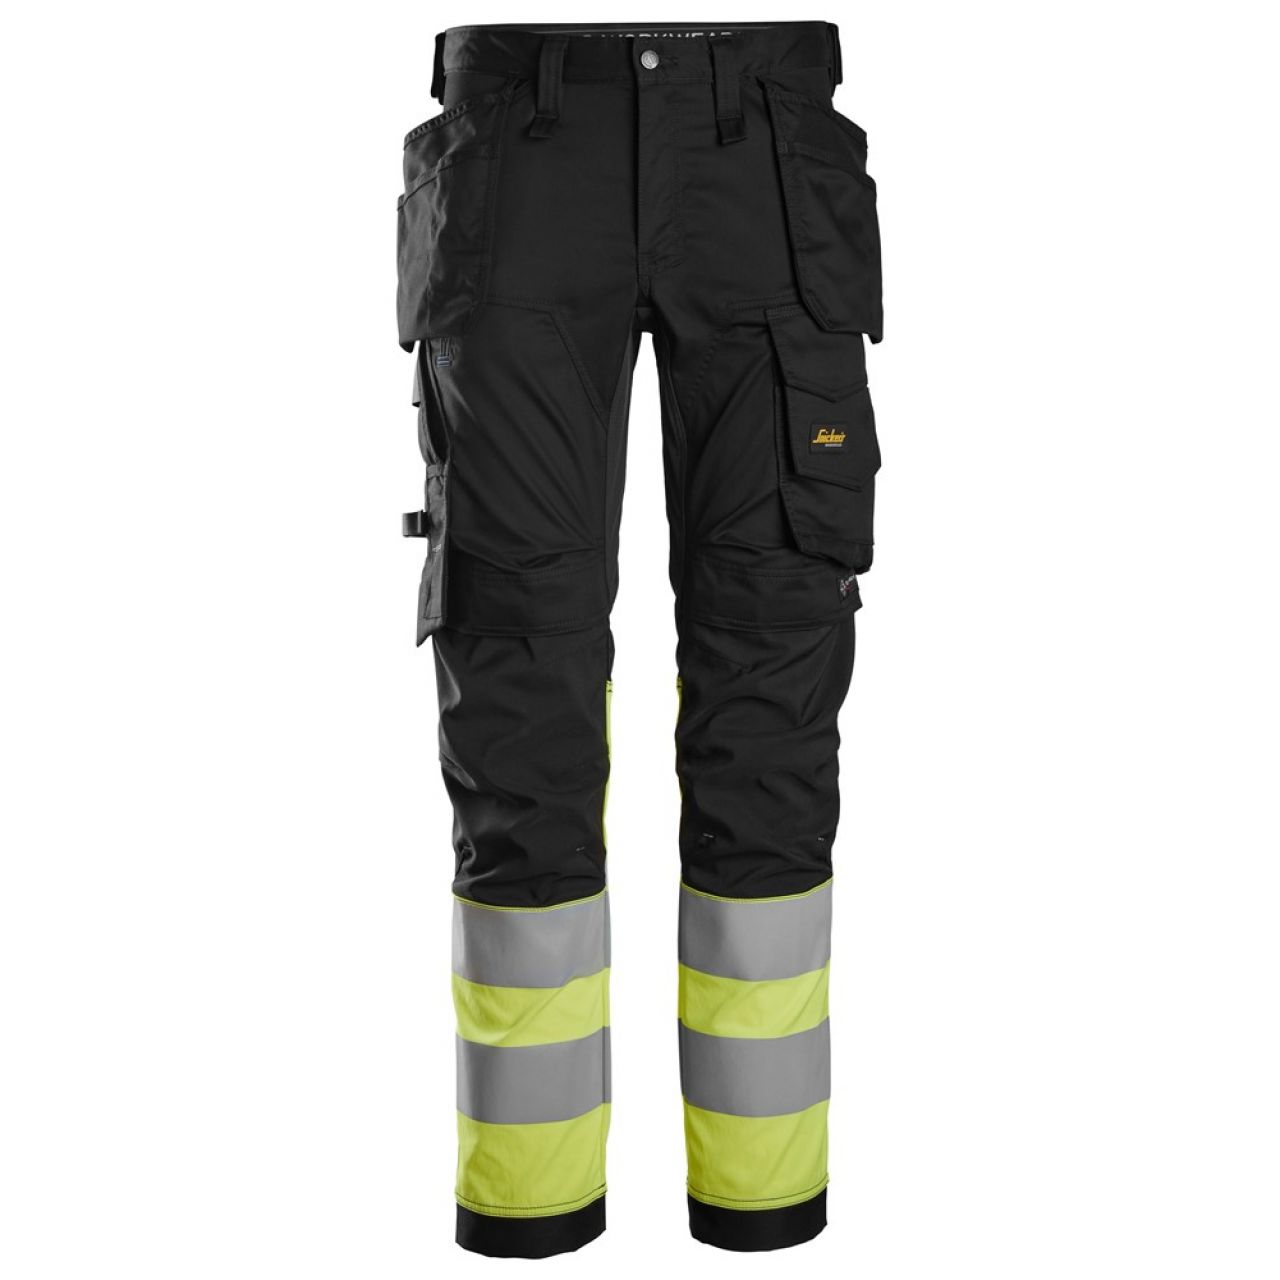 6234 Pantalones largos de trabajo elásticos de alta visibilidad clase 1 con bolsillos flotantes negro-amarillo talla 92